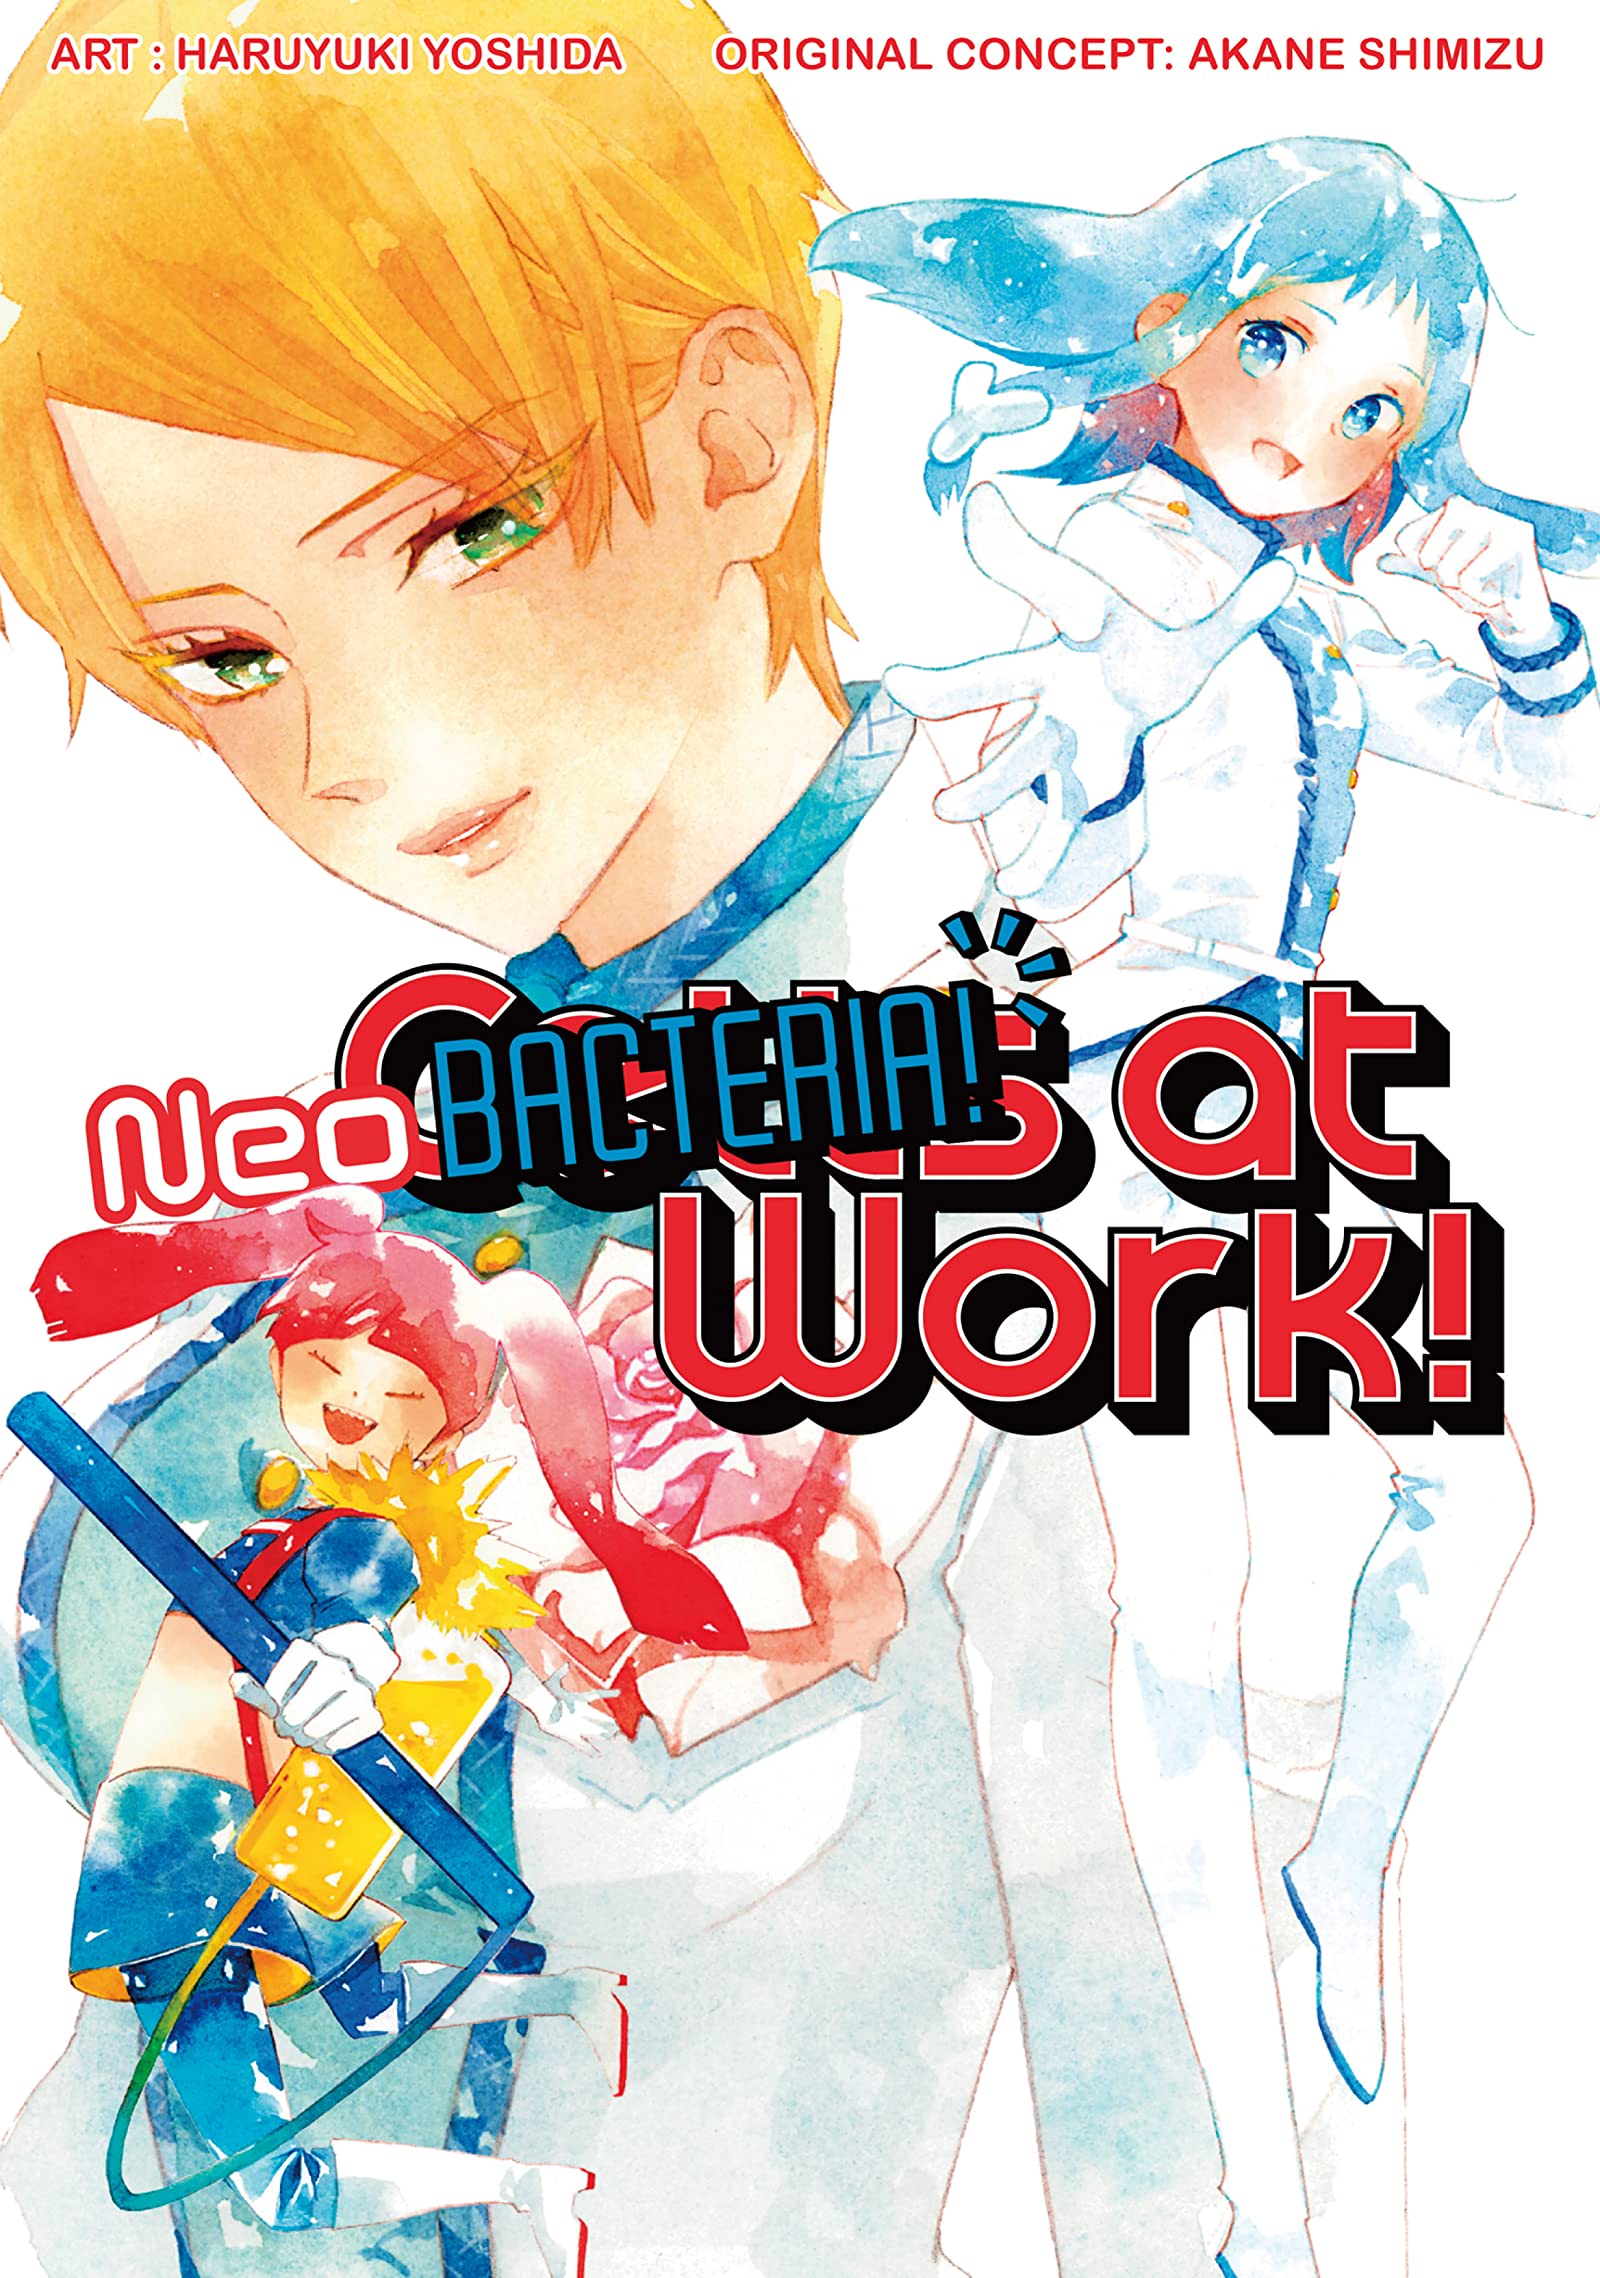 Cells at Work! Baby Manga